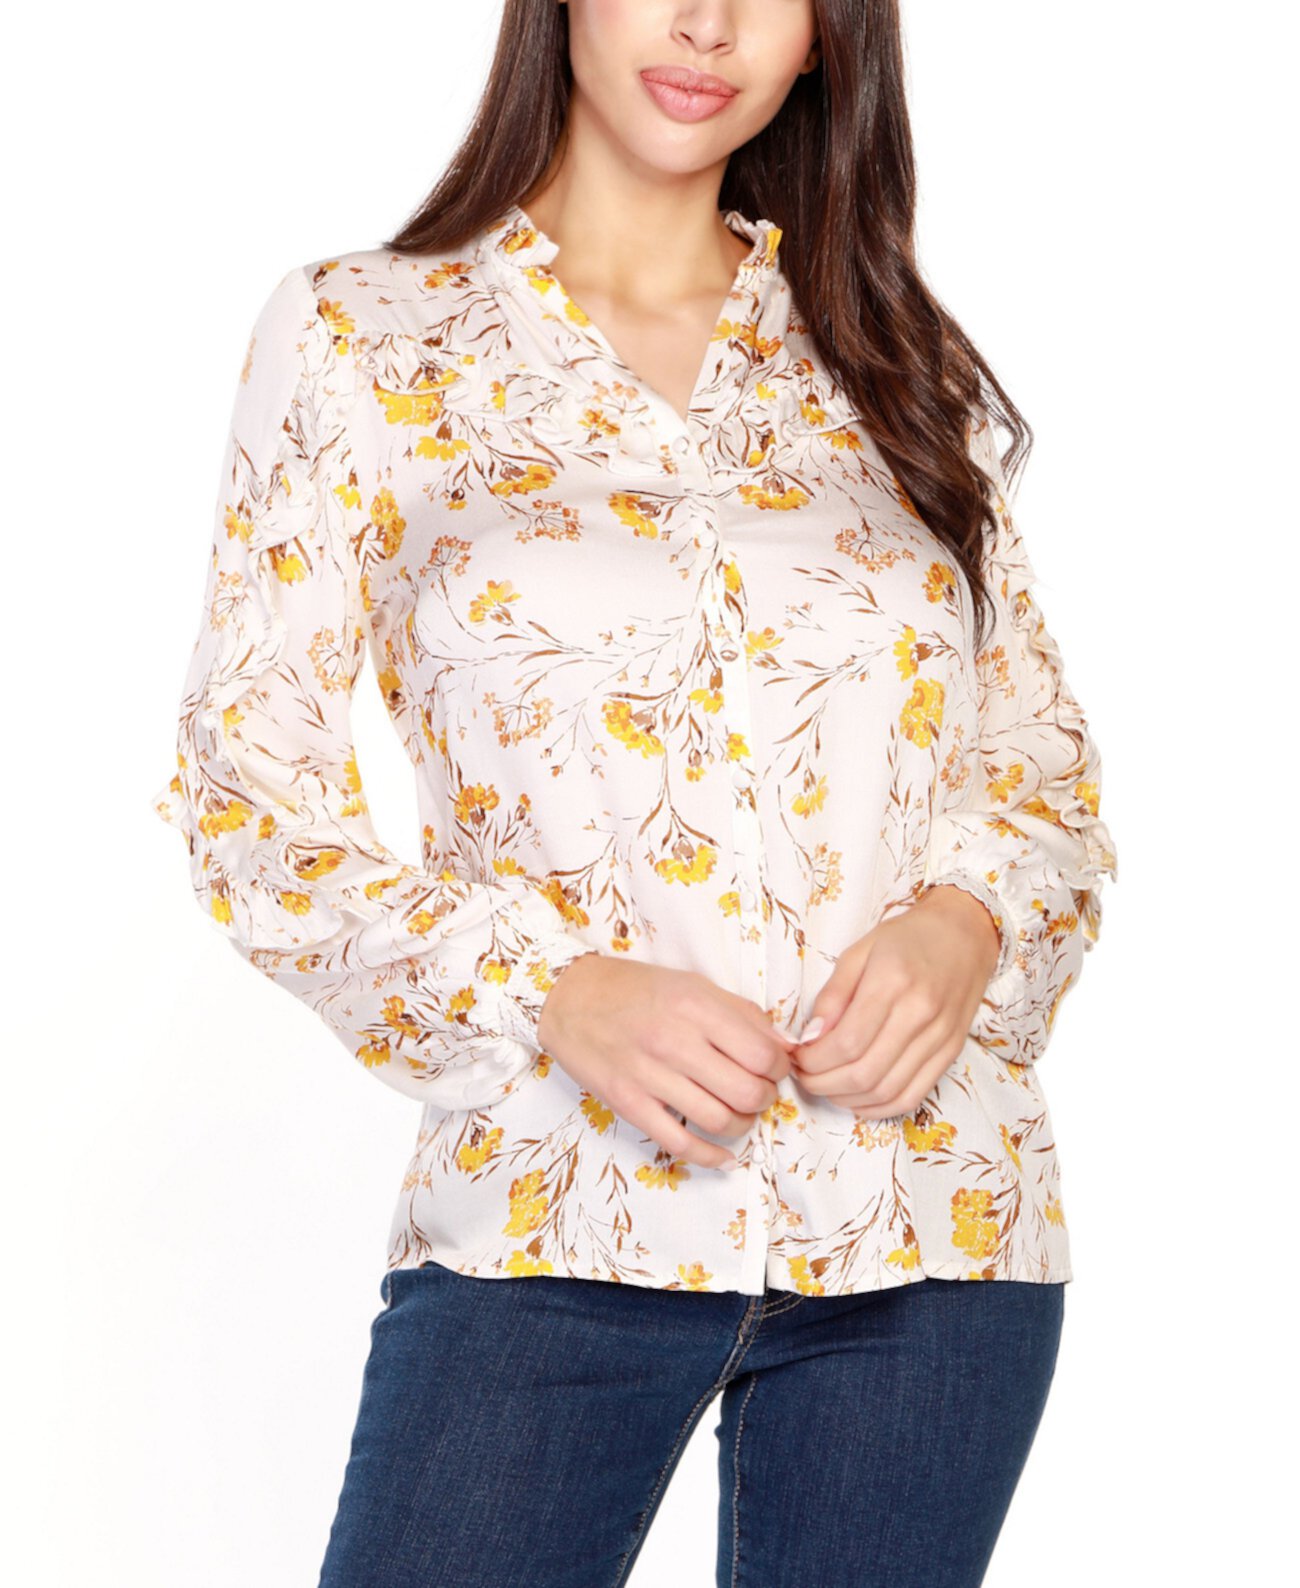 Женская блуза с цветочным принтом и рюшами на пуговицах спереди Black Label Belldini